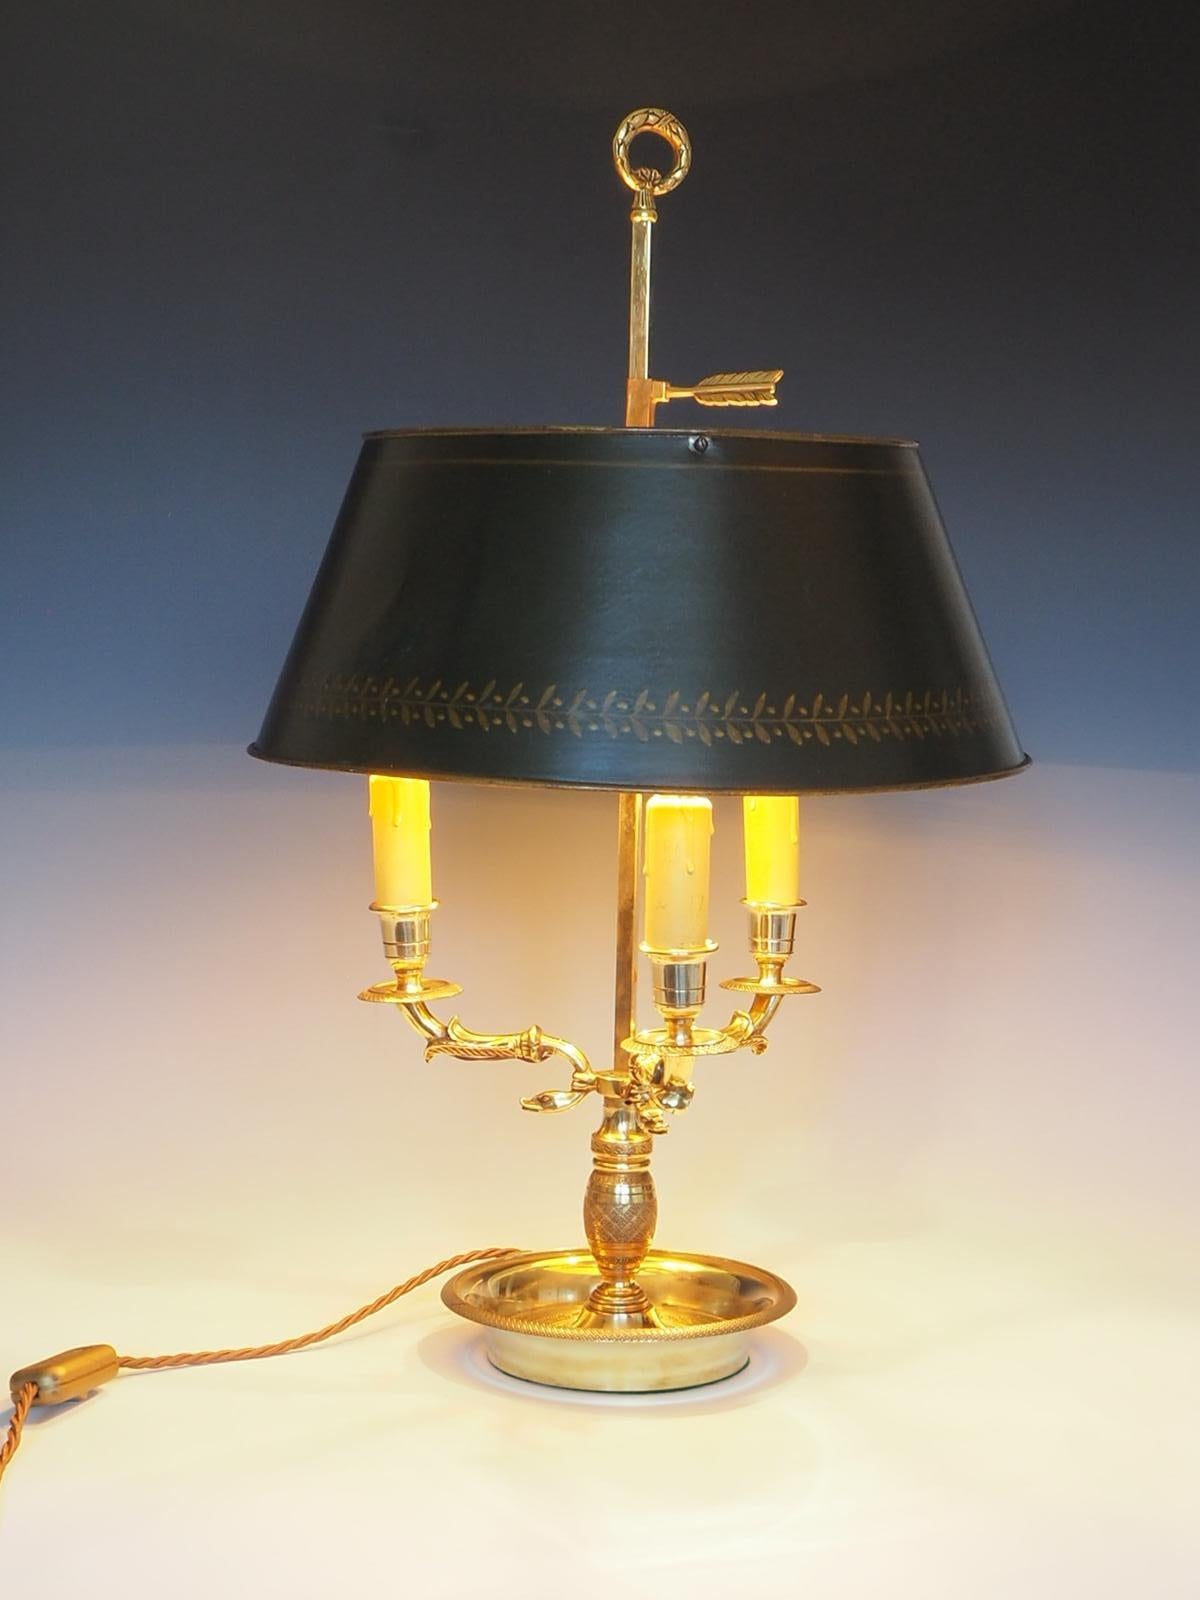 Die antike französische Bouillotte-Tischlampe aus dem 19. Jahrhundert ist ein wunderschönes Stück aus Messing mit einem schlangenförmigen, dreiarmigen Sockel und einem verstellbaren grünen Lampenschirm.

Die Lampe strahlt Eleganz und Raffinesse aus